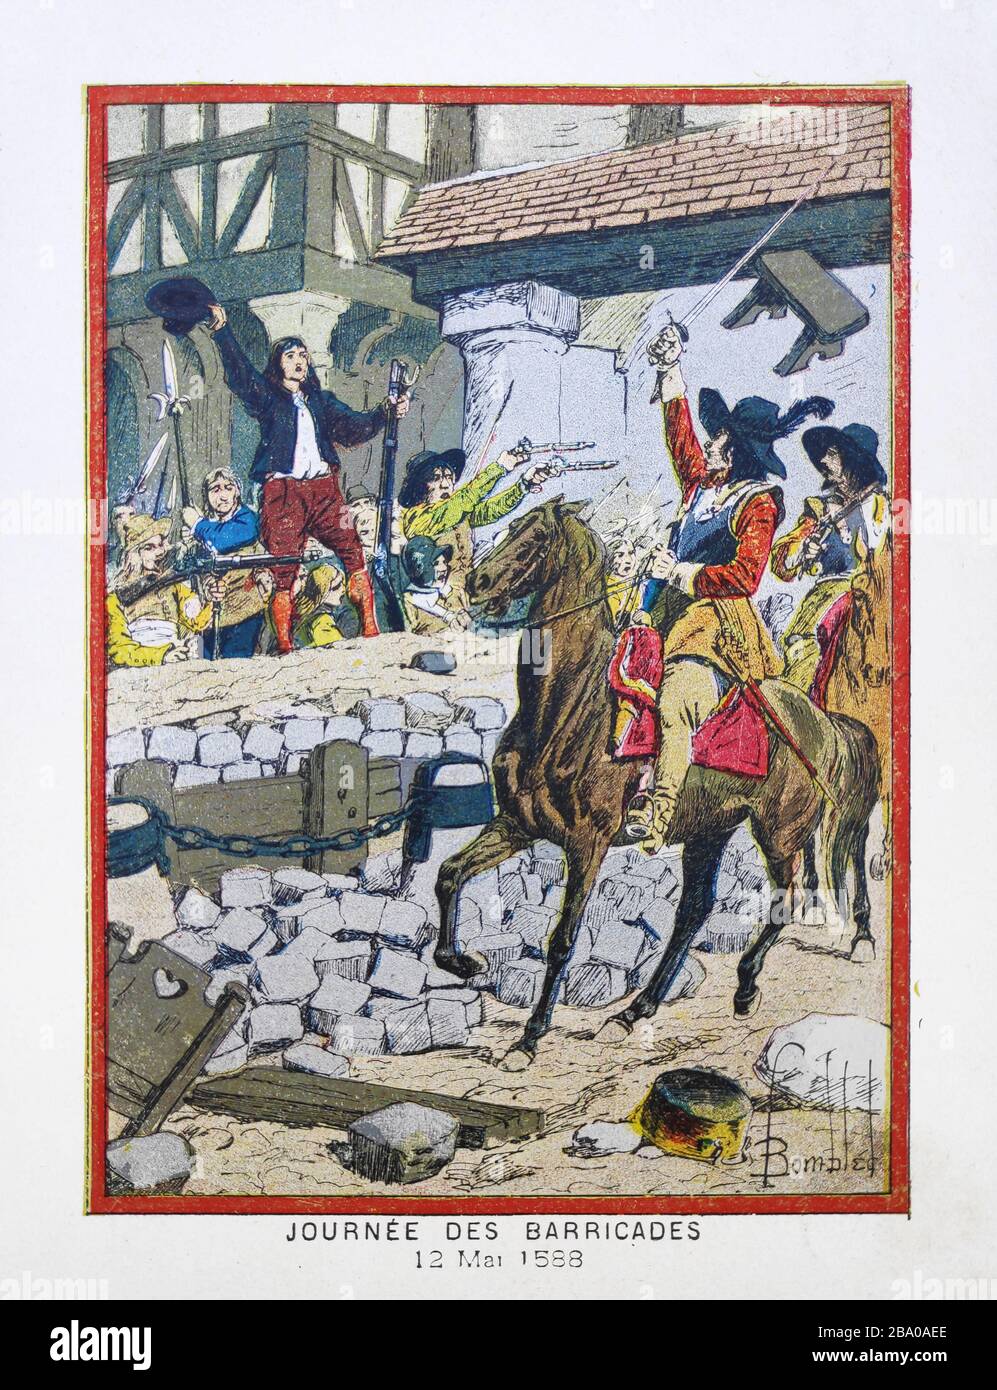 Vecchia illustrazione di 'L. Bombled' circa il giorno delle barricate durante le guerre francesi di religione stampato nel tardo 19 ° secolo. Foto Stock